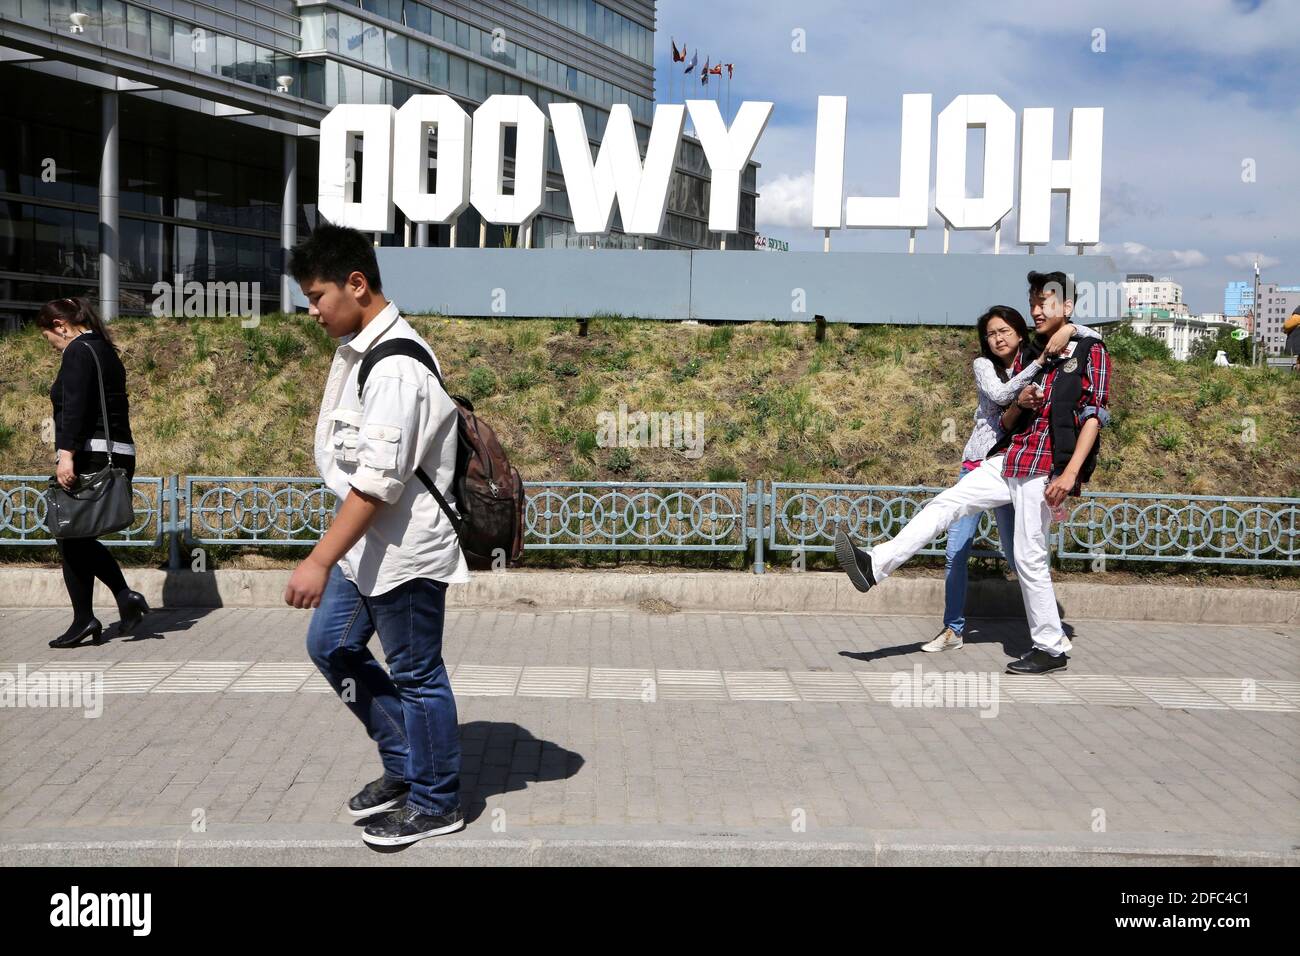 Mongolia, la gente camina por las calles de Ulanbataar con enormes letras de Hollywood Foto de stock